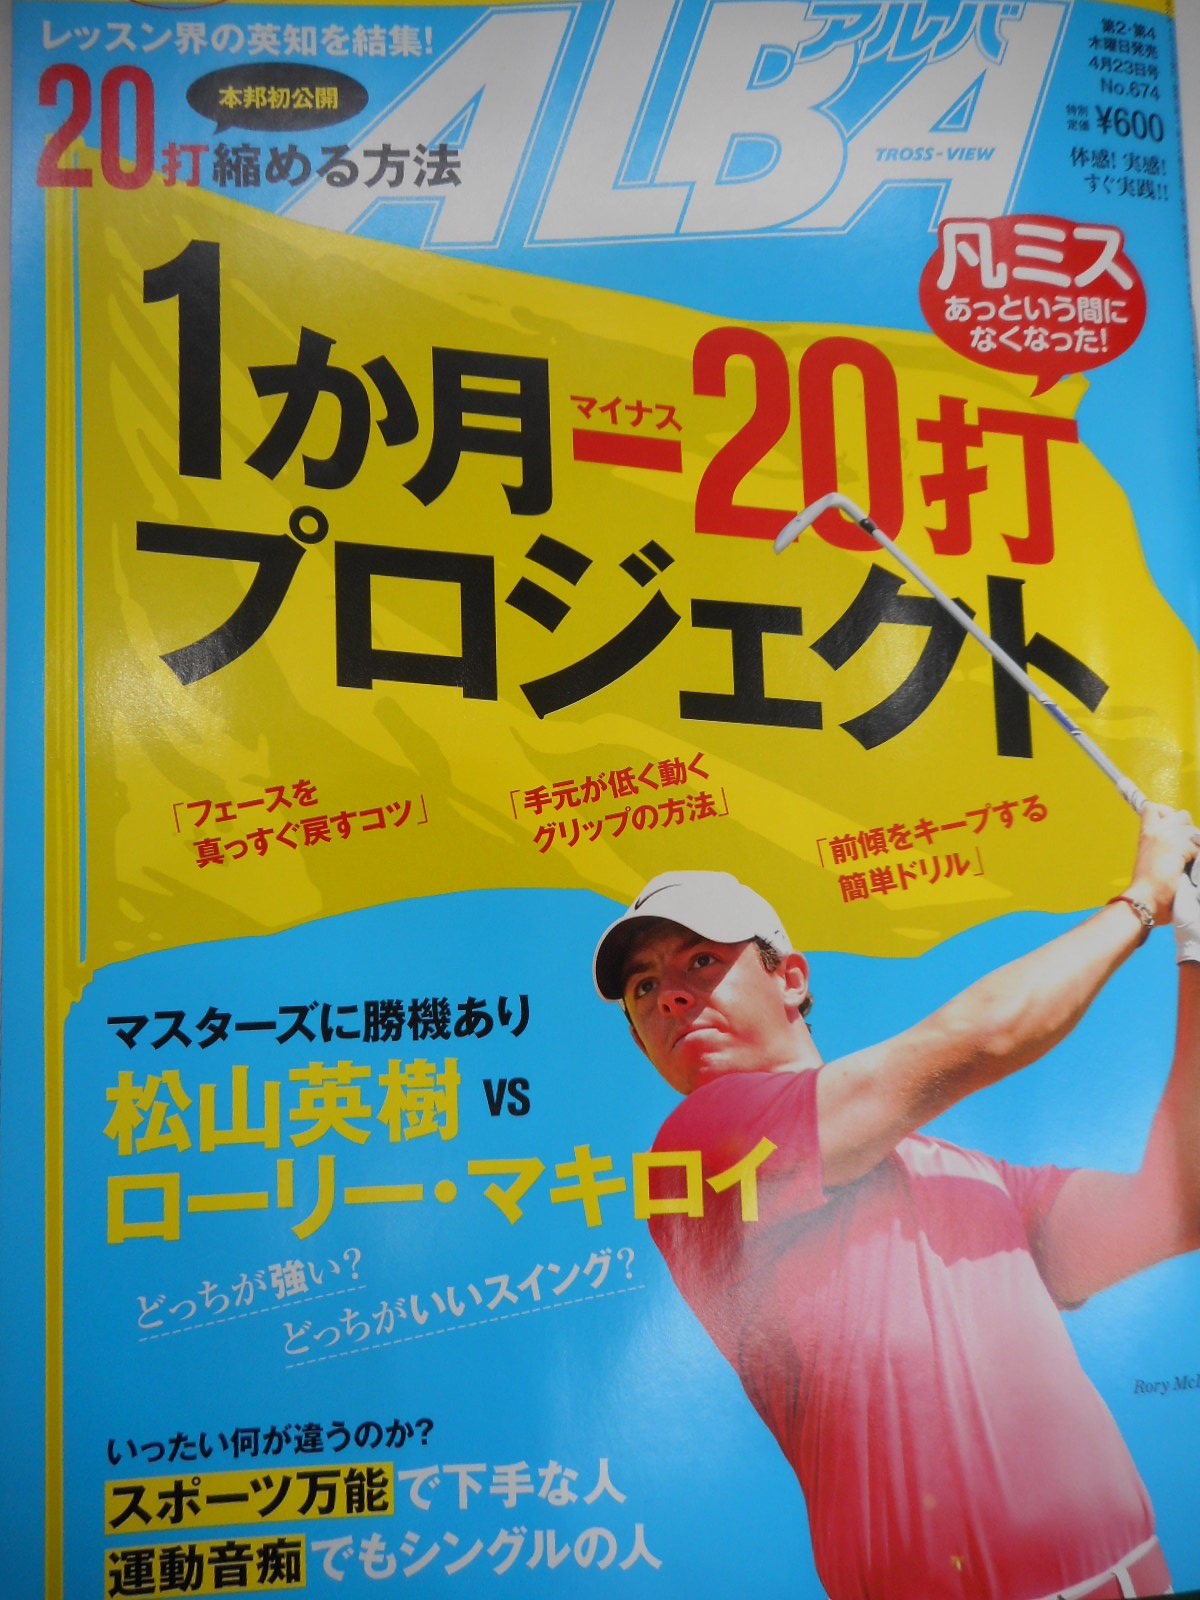 http://www.golfpartner.co.jp/396/2015/04/30/DSCN0860.JPG